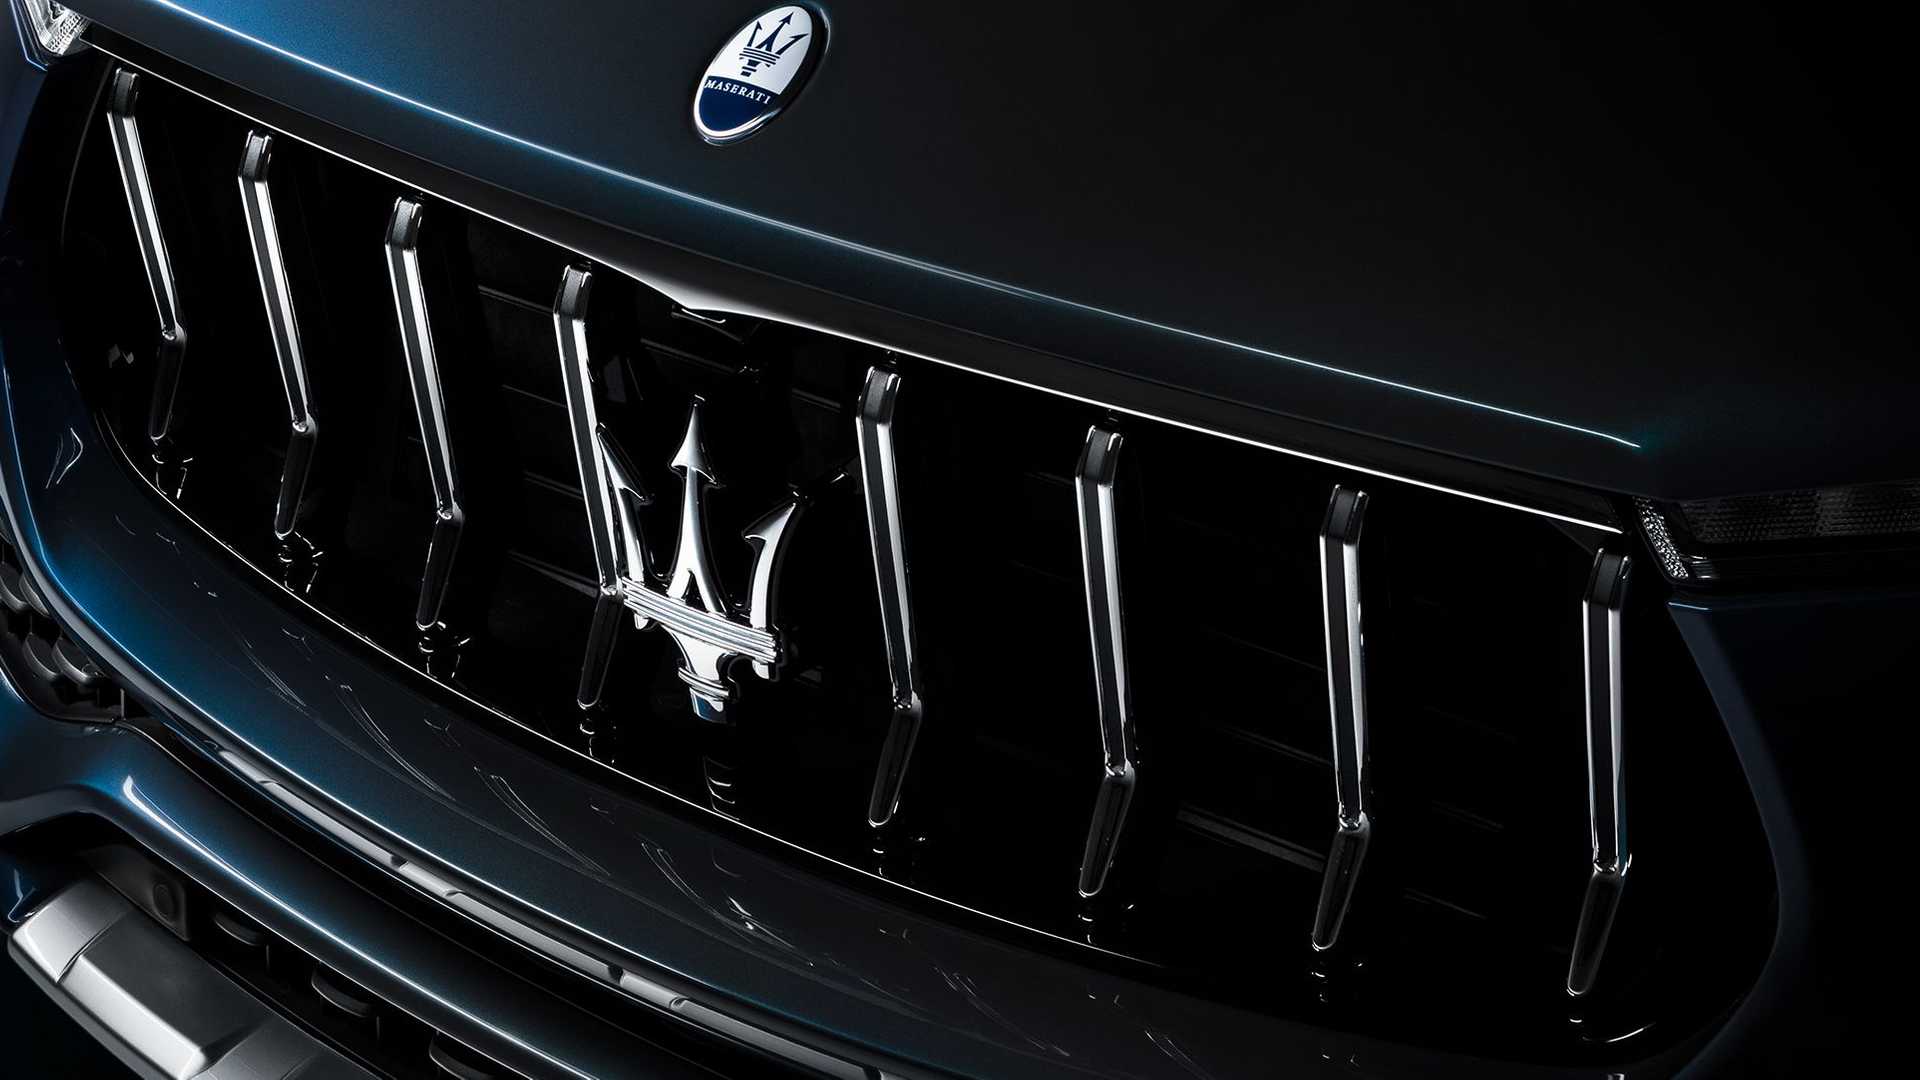 جلوپنجره شاسی بلند مازراتی لوانته هیبرید / Maserati Levante Hybrid SUV آبی رنگ